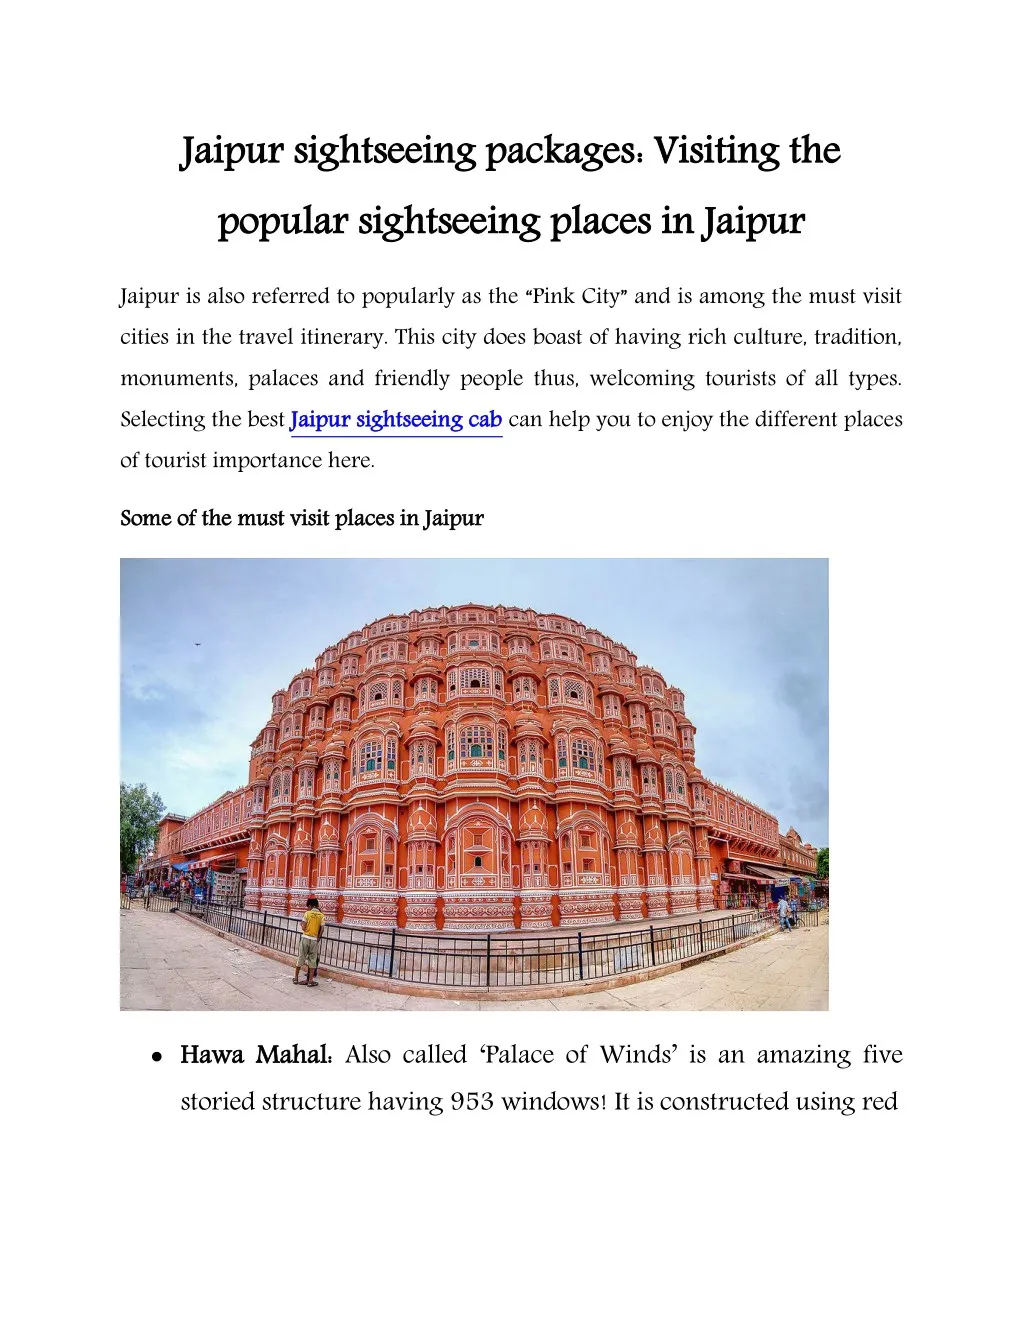 jaipur sightseeing packages popular sightseeing